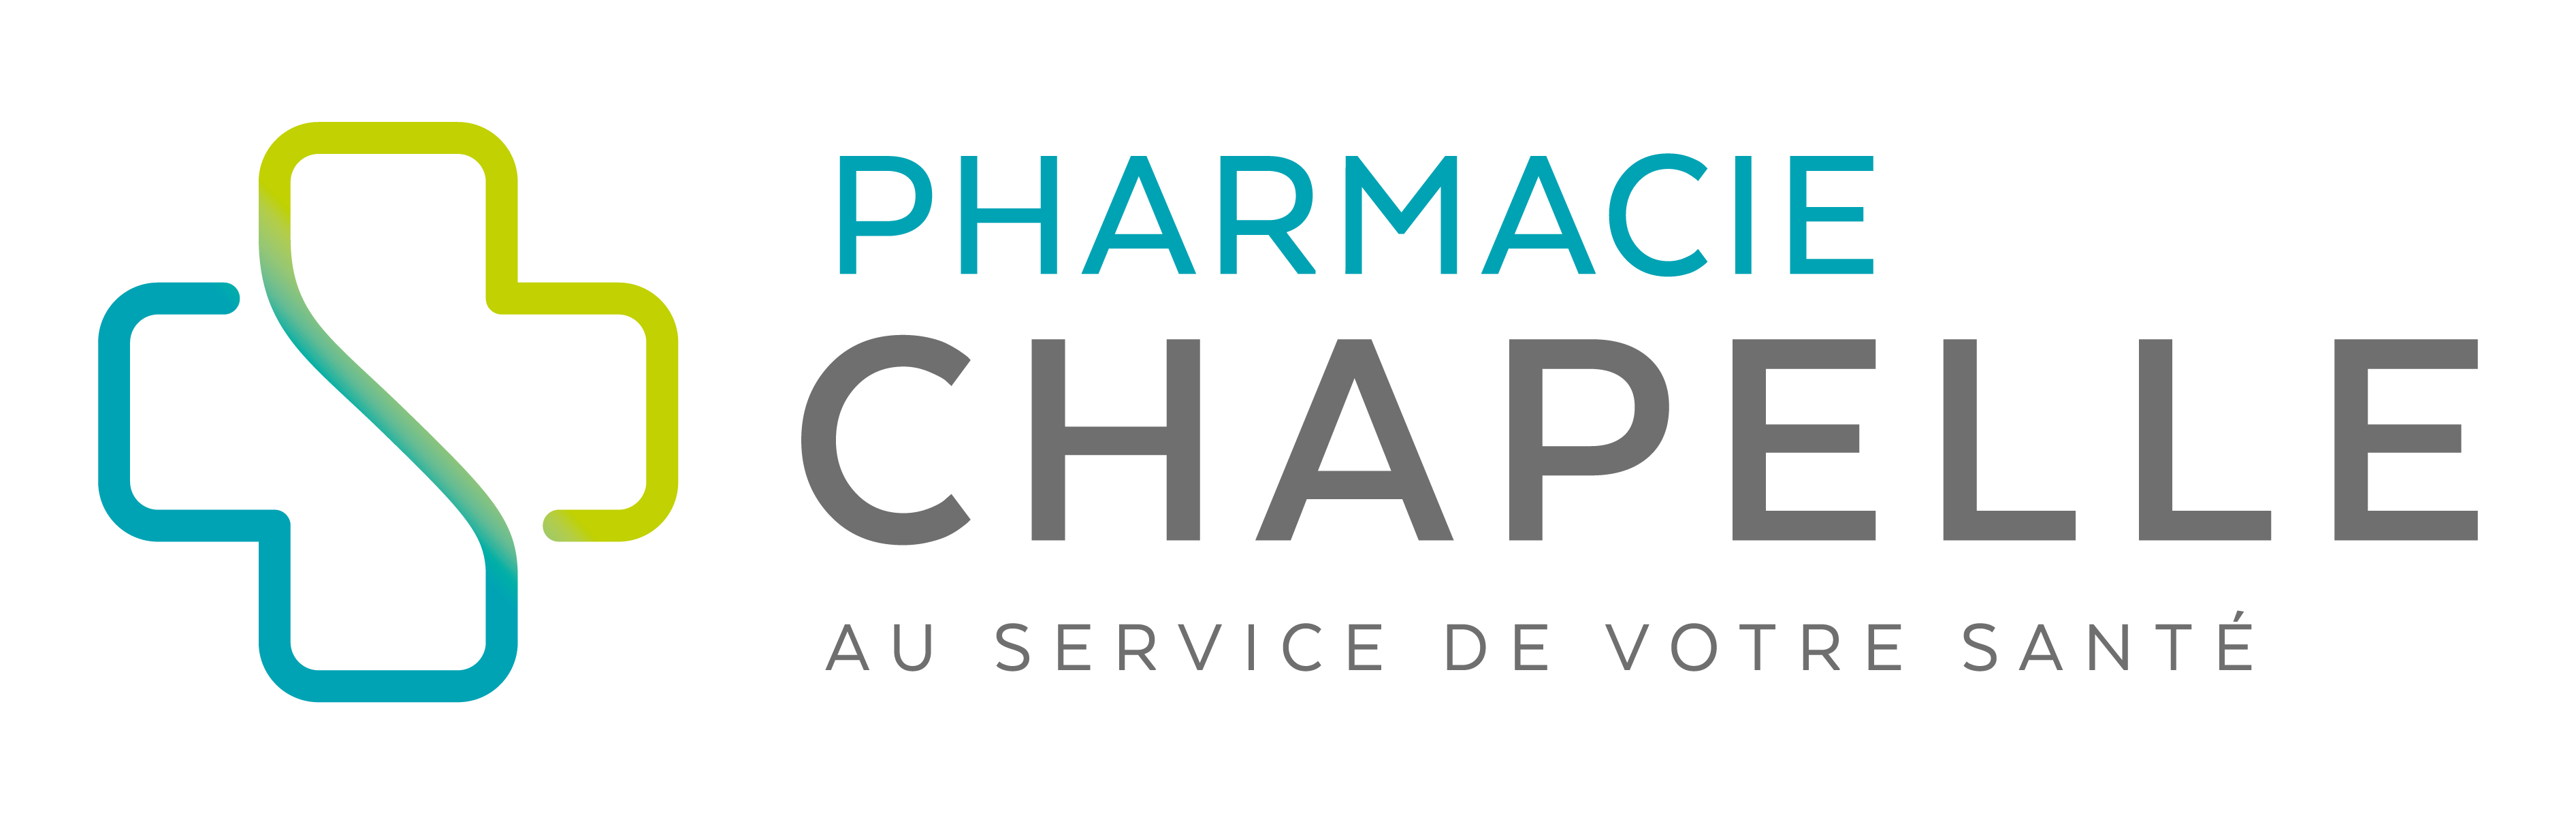 Pharmacie Chapelle